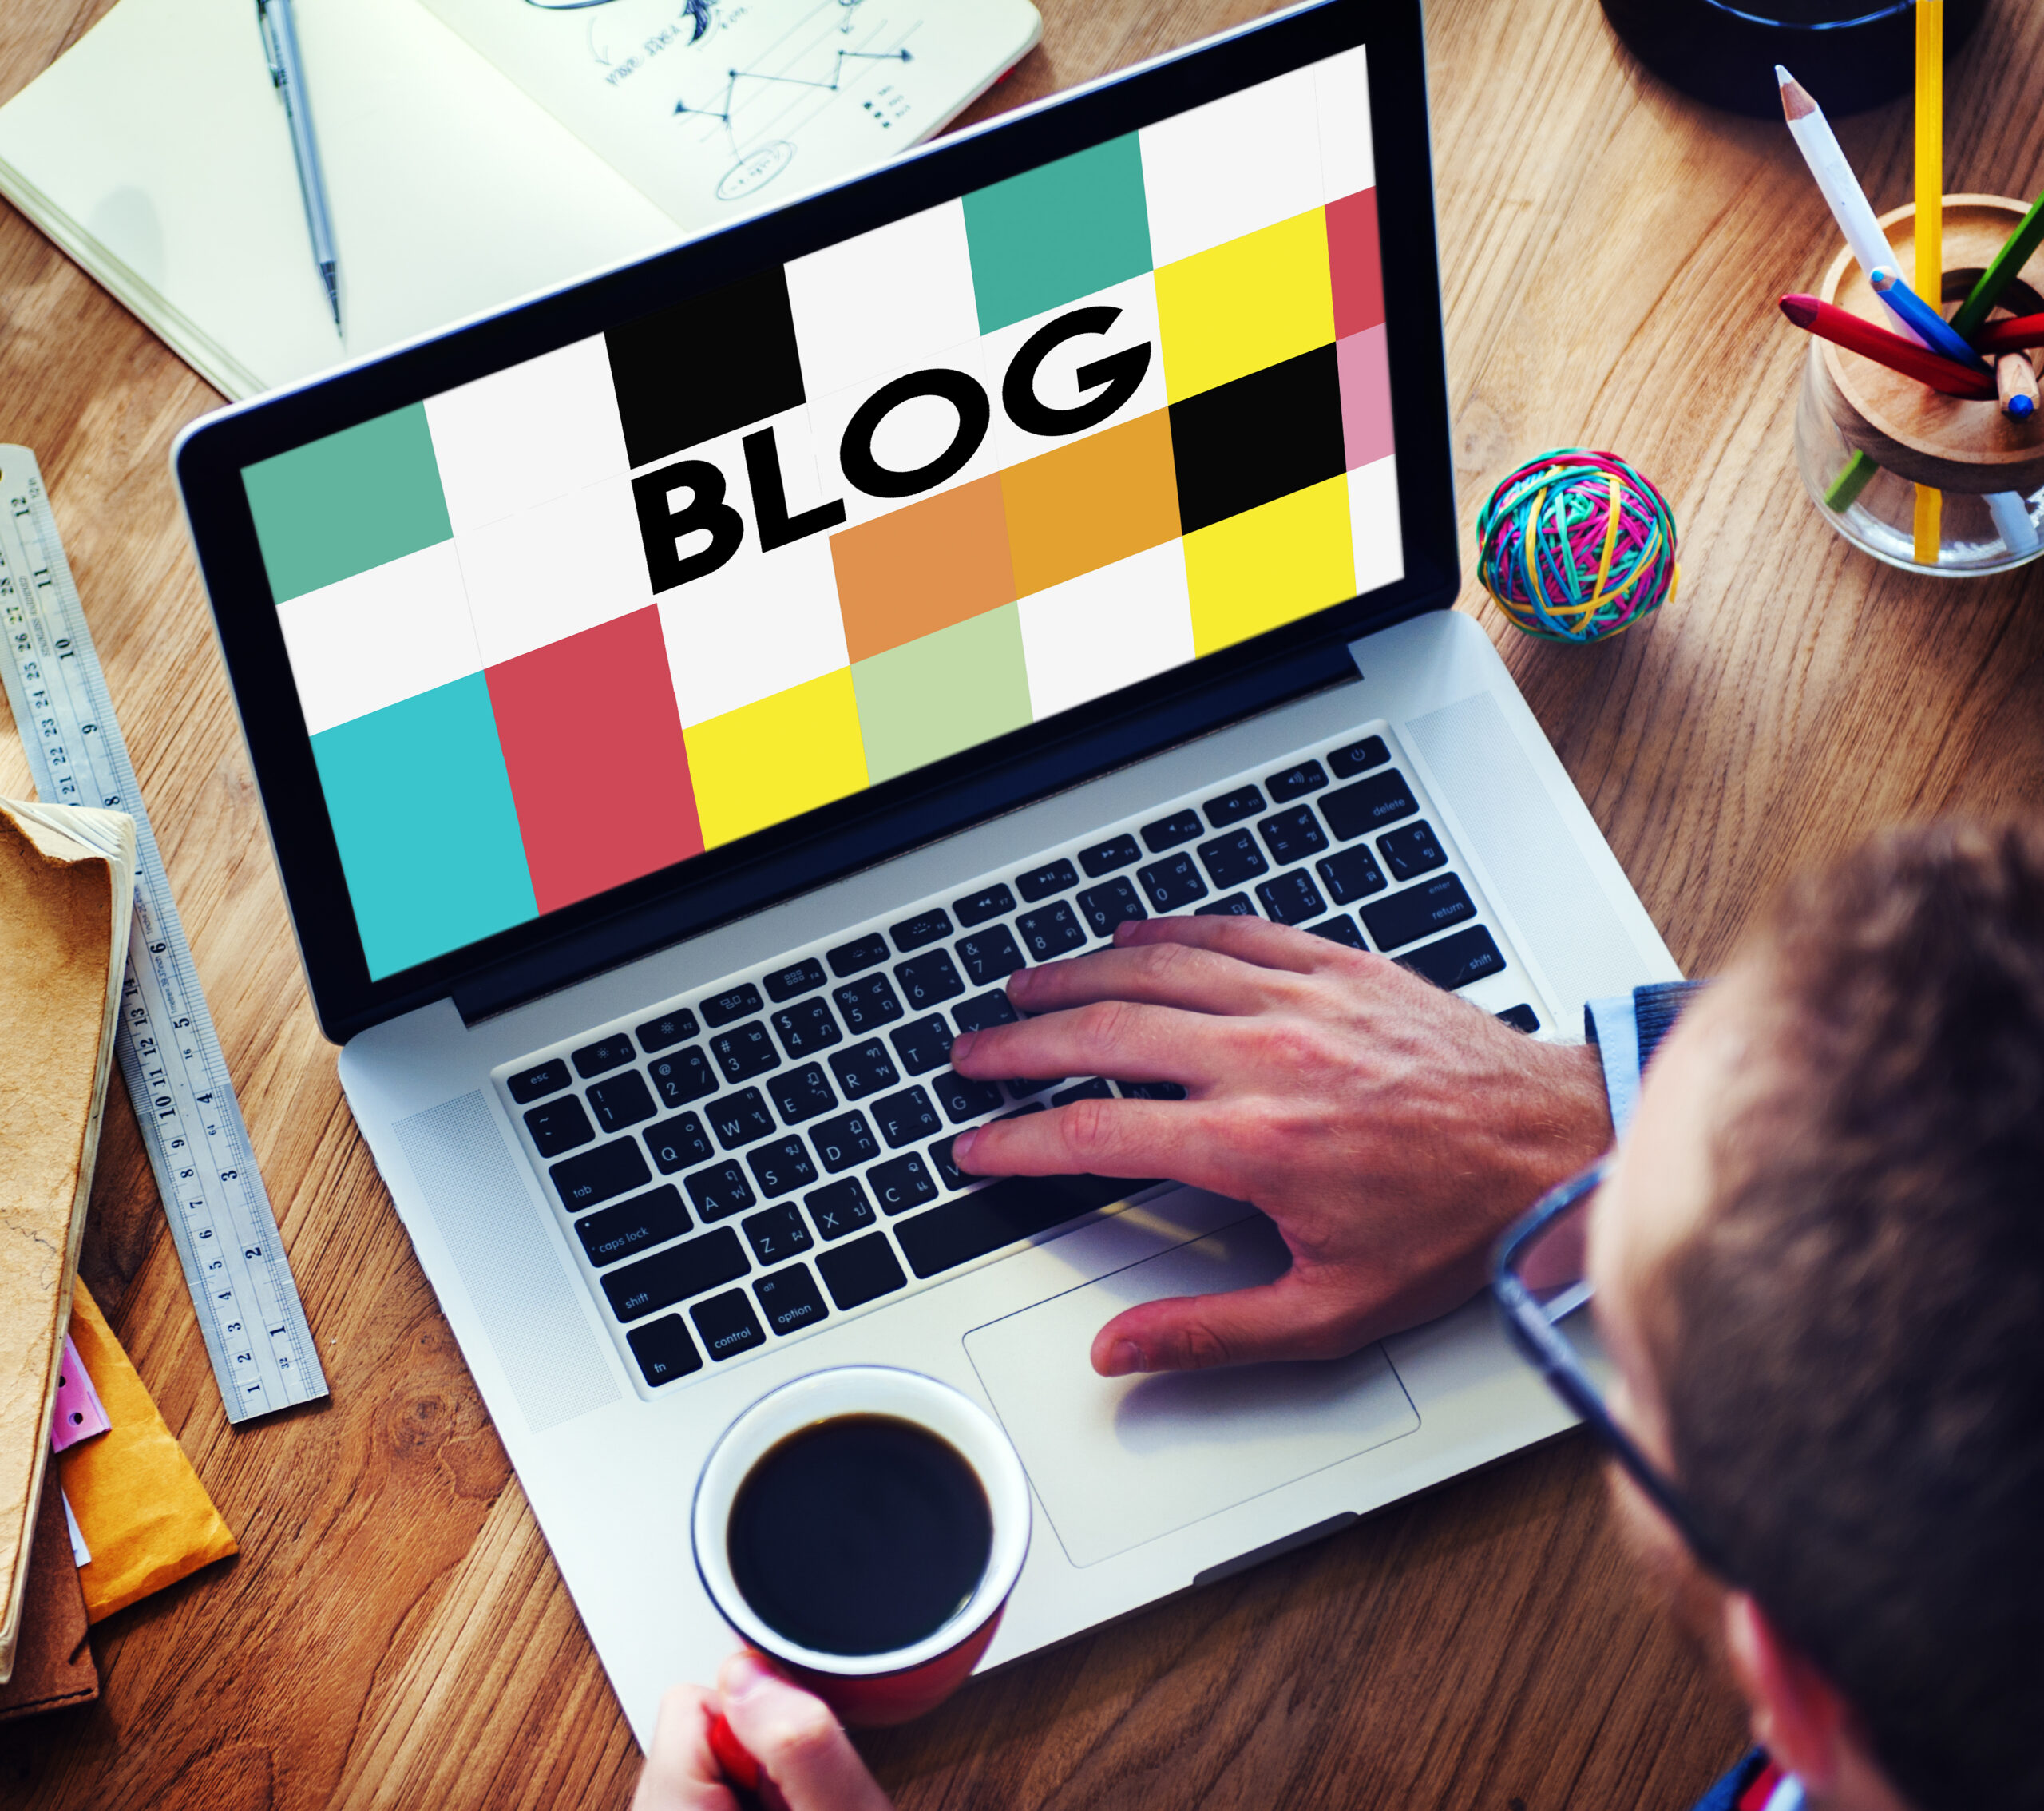 Como criar um blog?